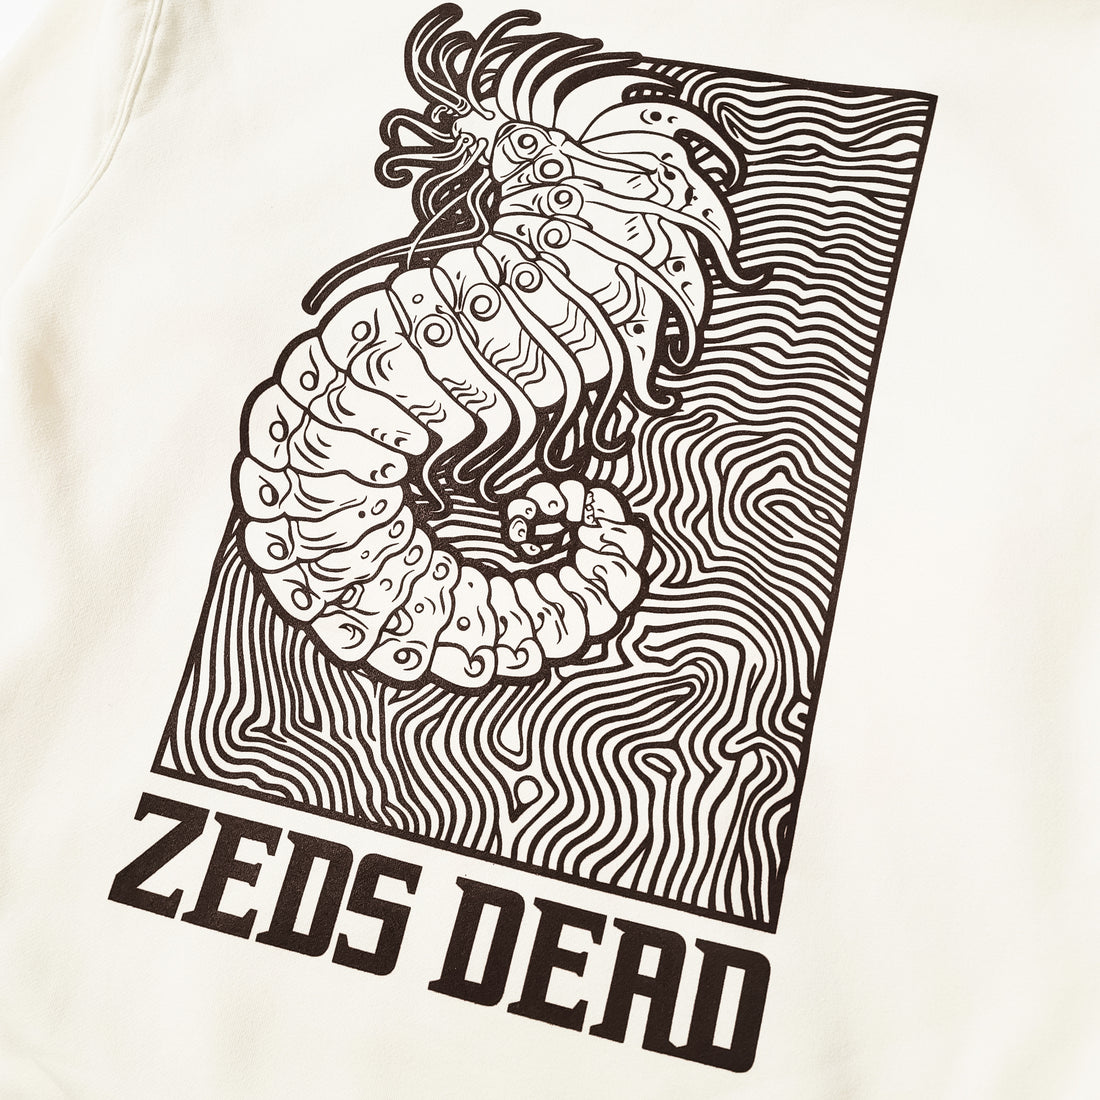 ZEDS DEAD - Earworm Heavyweight Hoodie - Bone